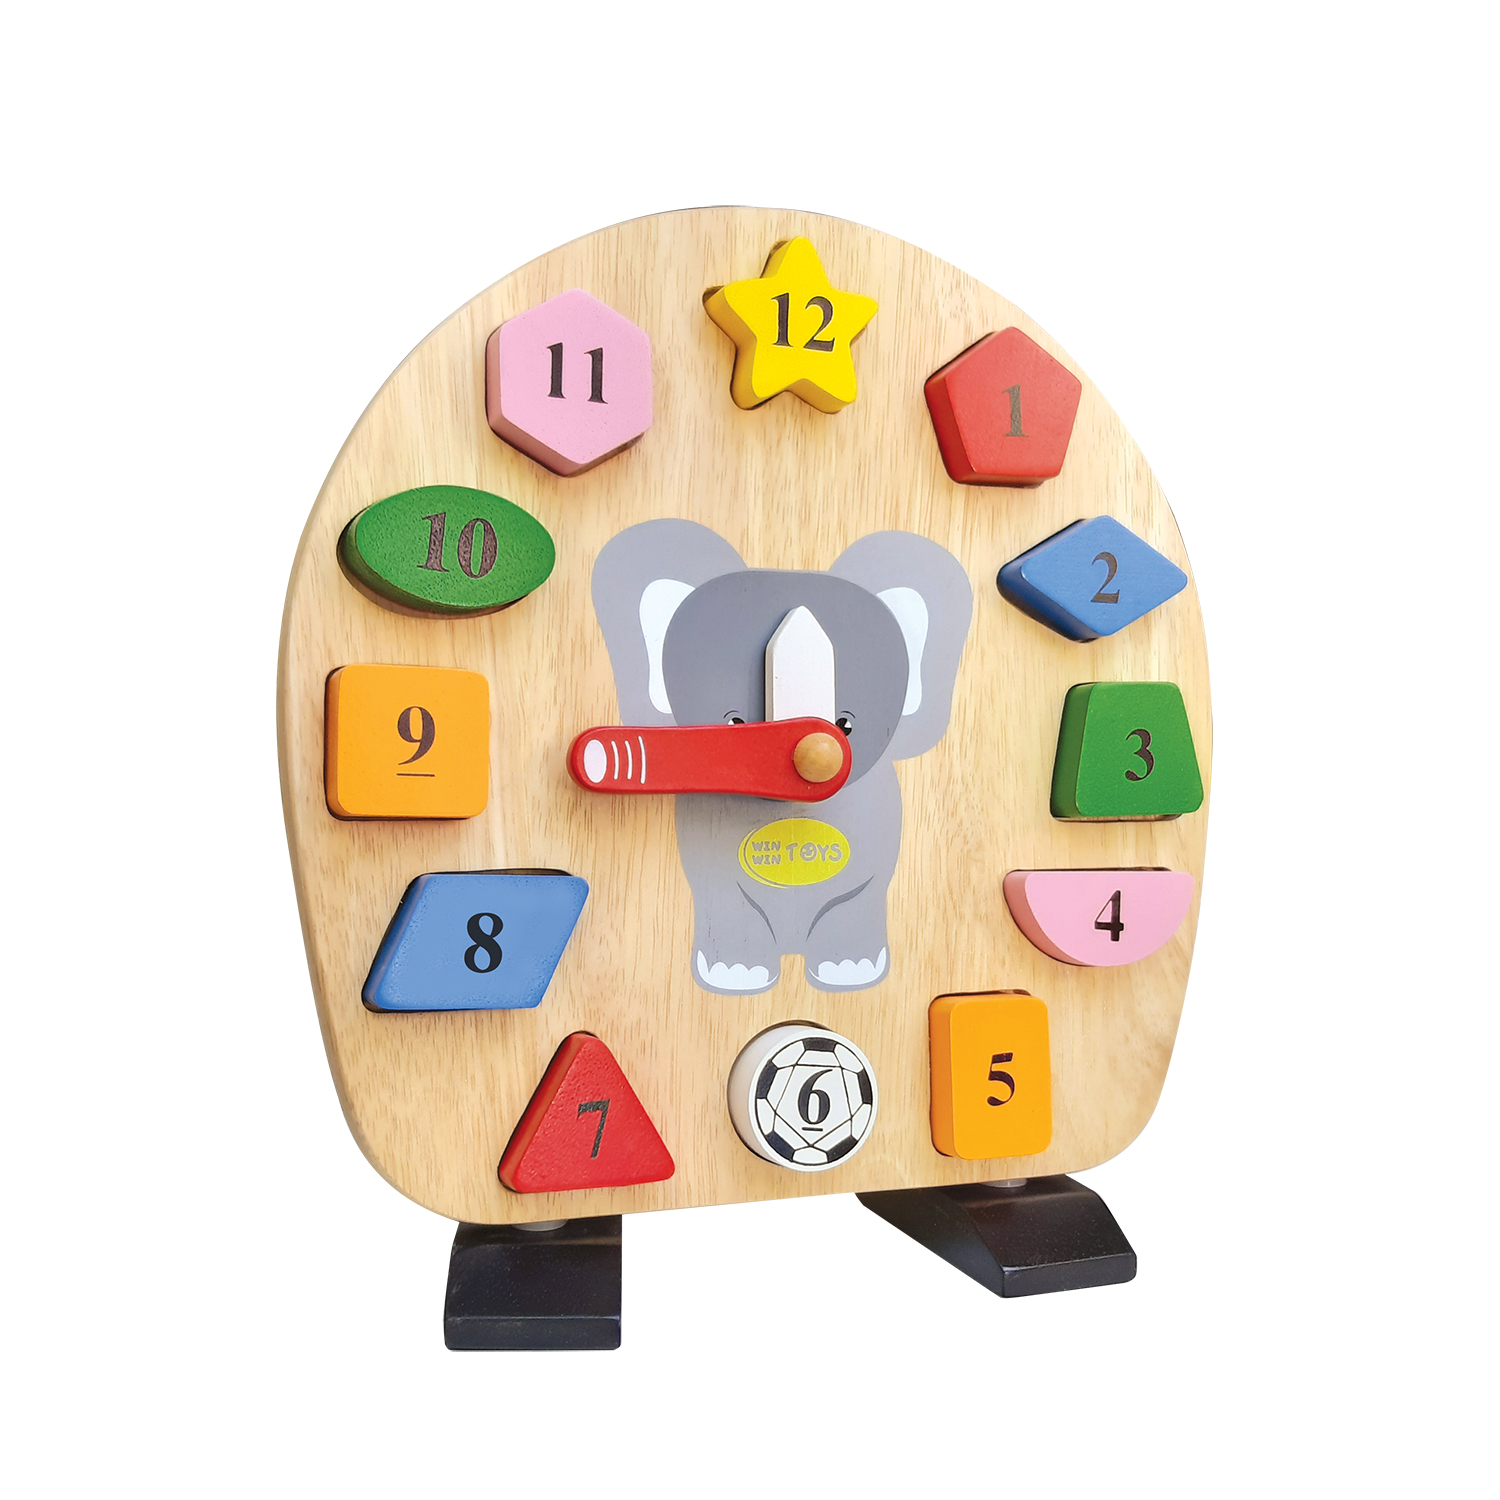 Hình ảnh Đồ chơi gỗ Winwintoys - Đồng hồ con voi cho bé